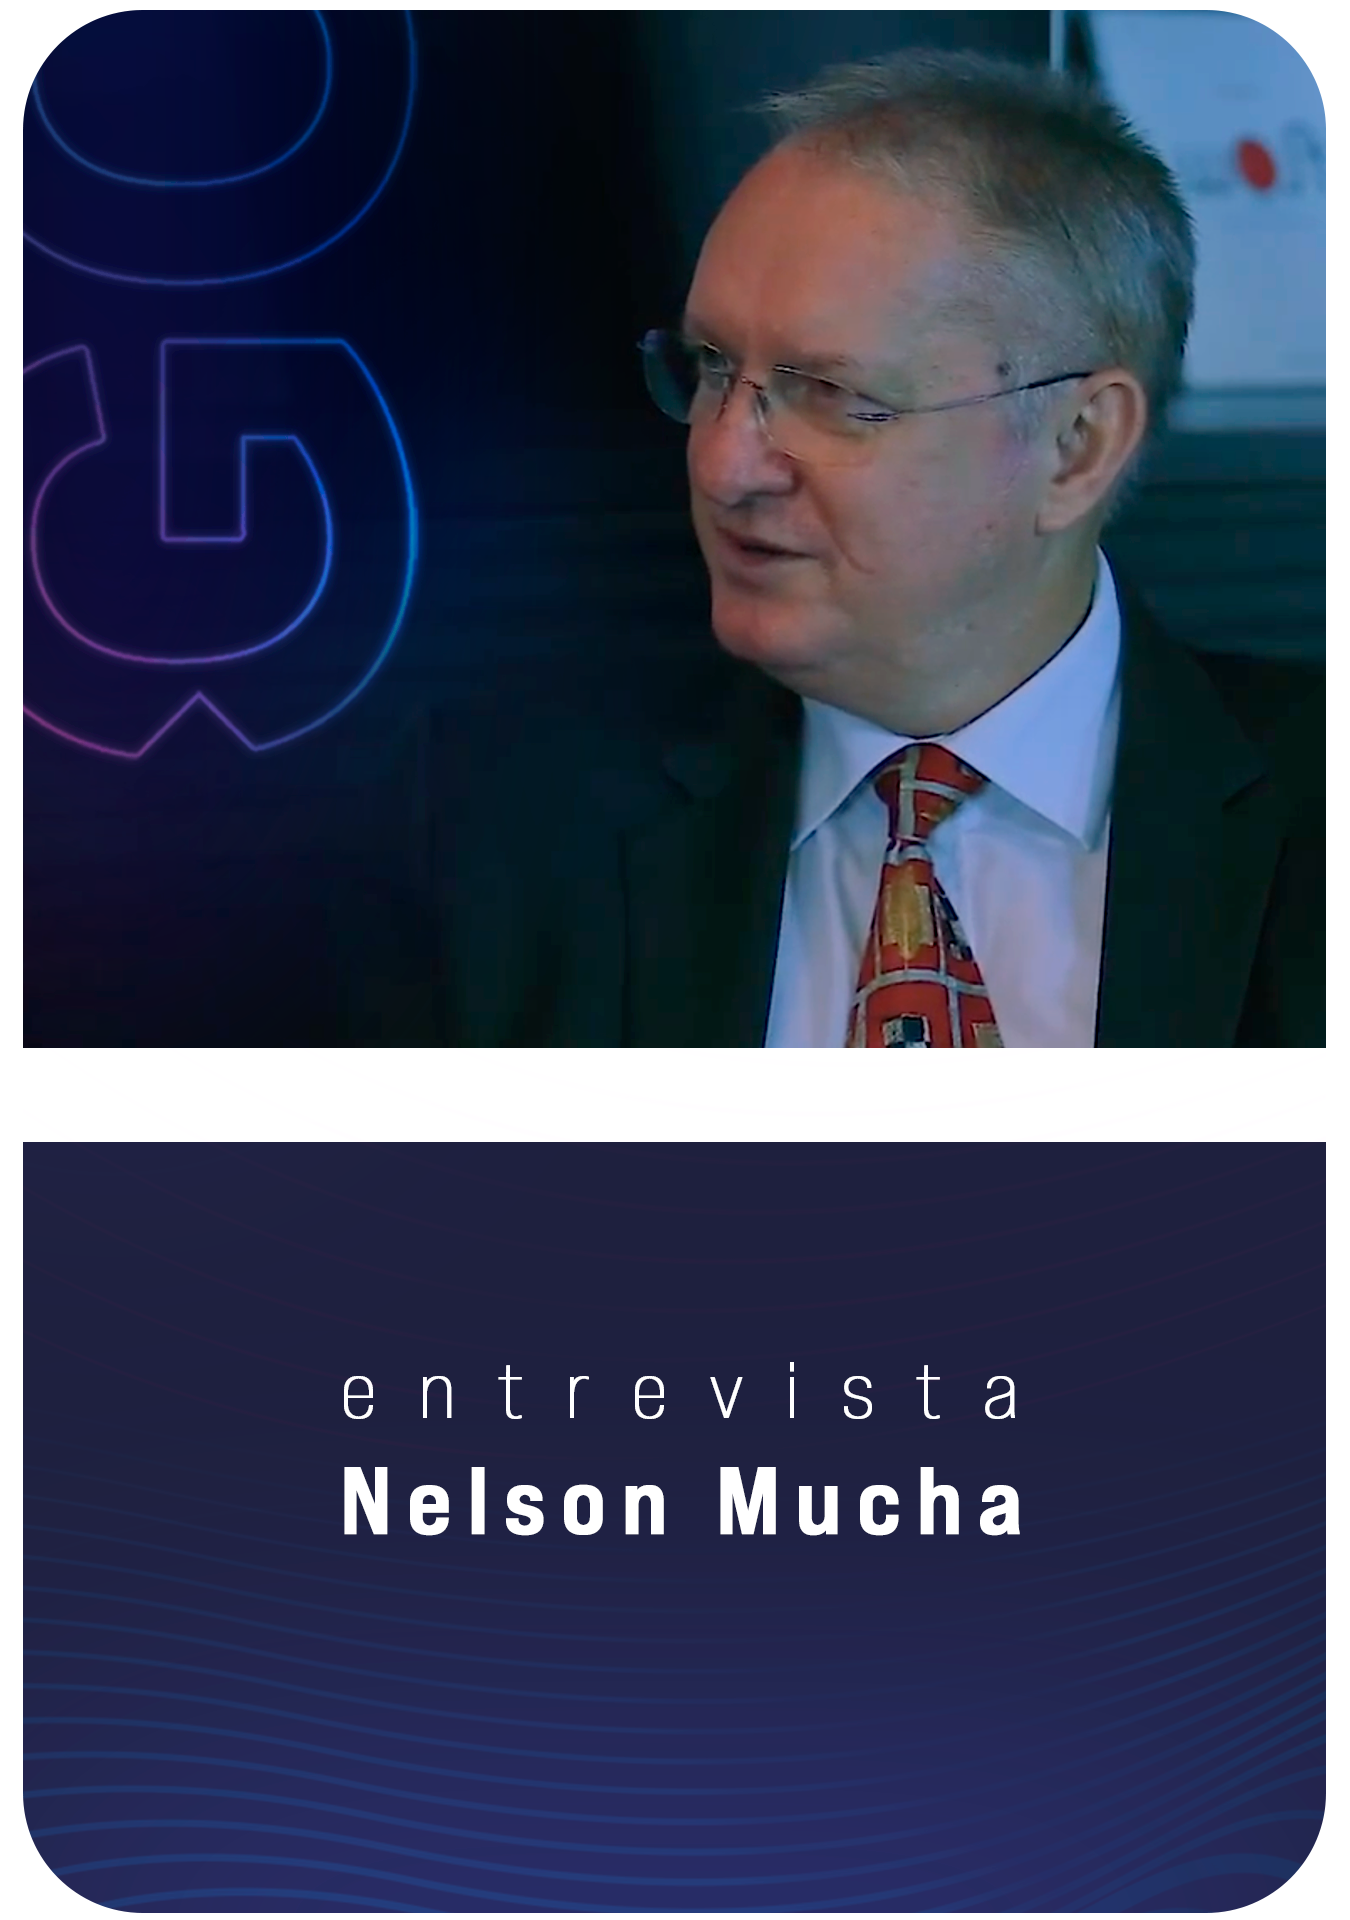 Dr. Nelson Mucha